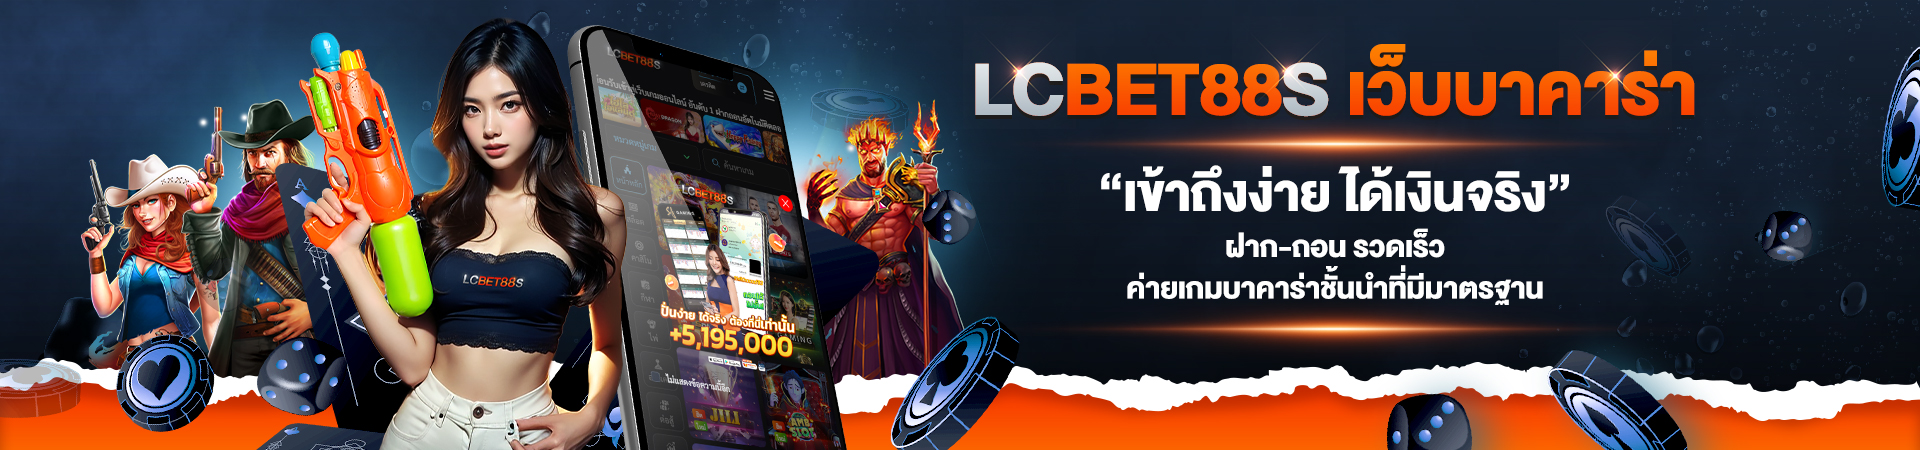 LCBET88S-Songkran-header-Desktop